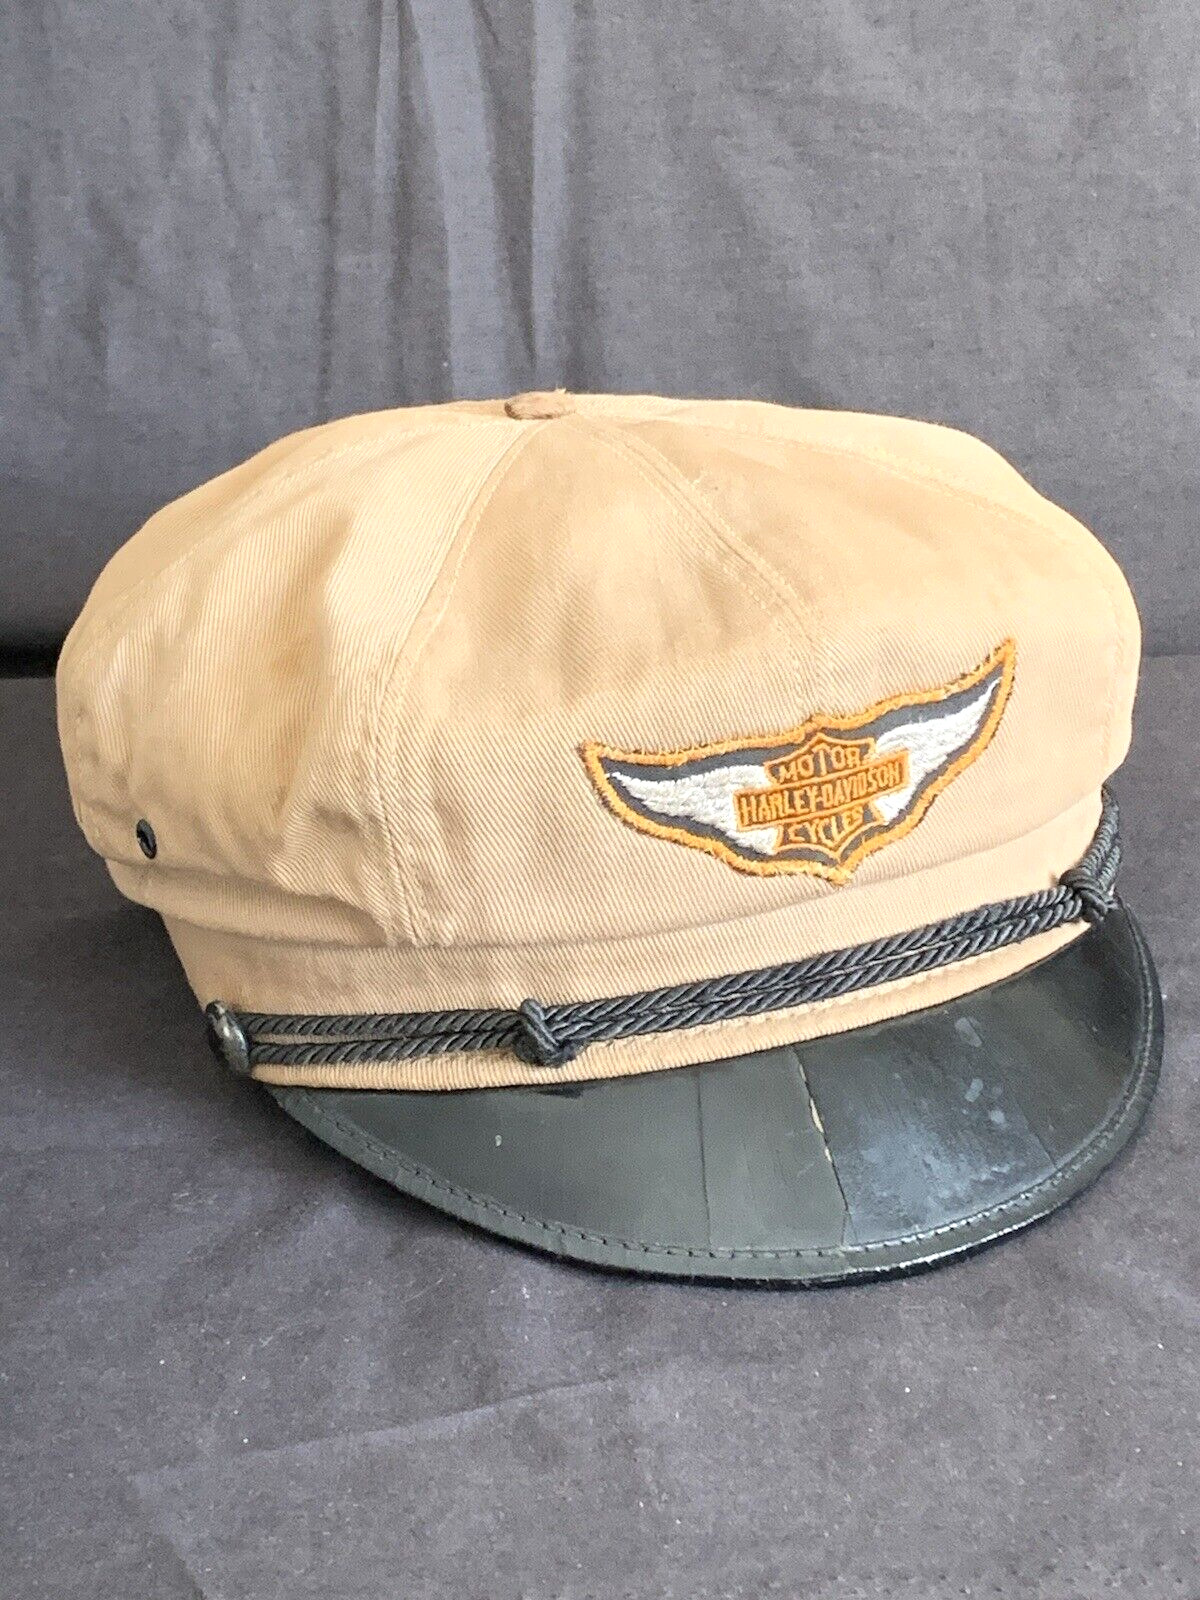 VTG 1940s - 50s ORIGINAL Harley Davidson Motorcycle Captains Hat Cap Inside Logo